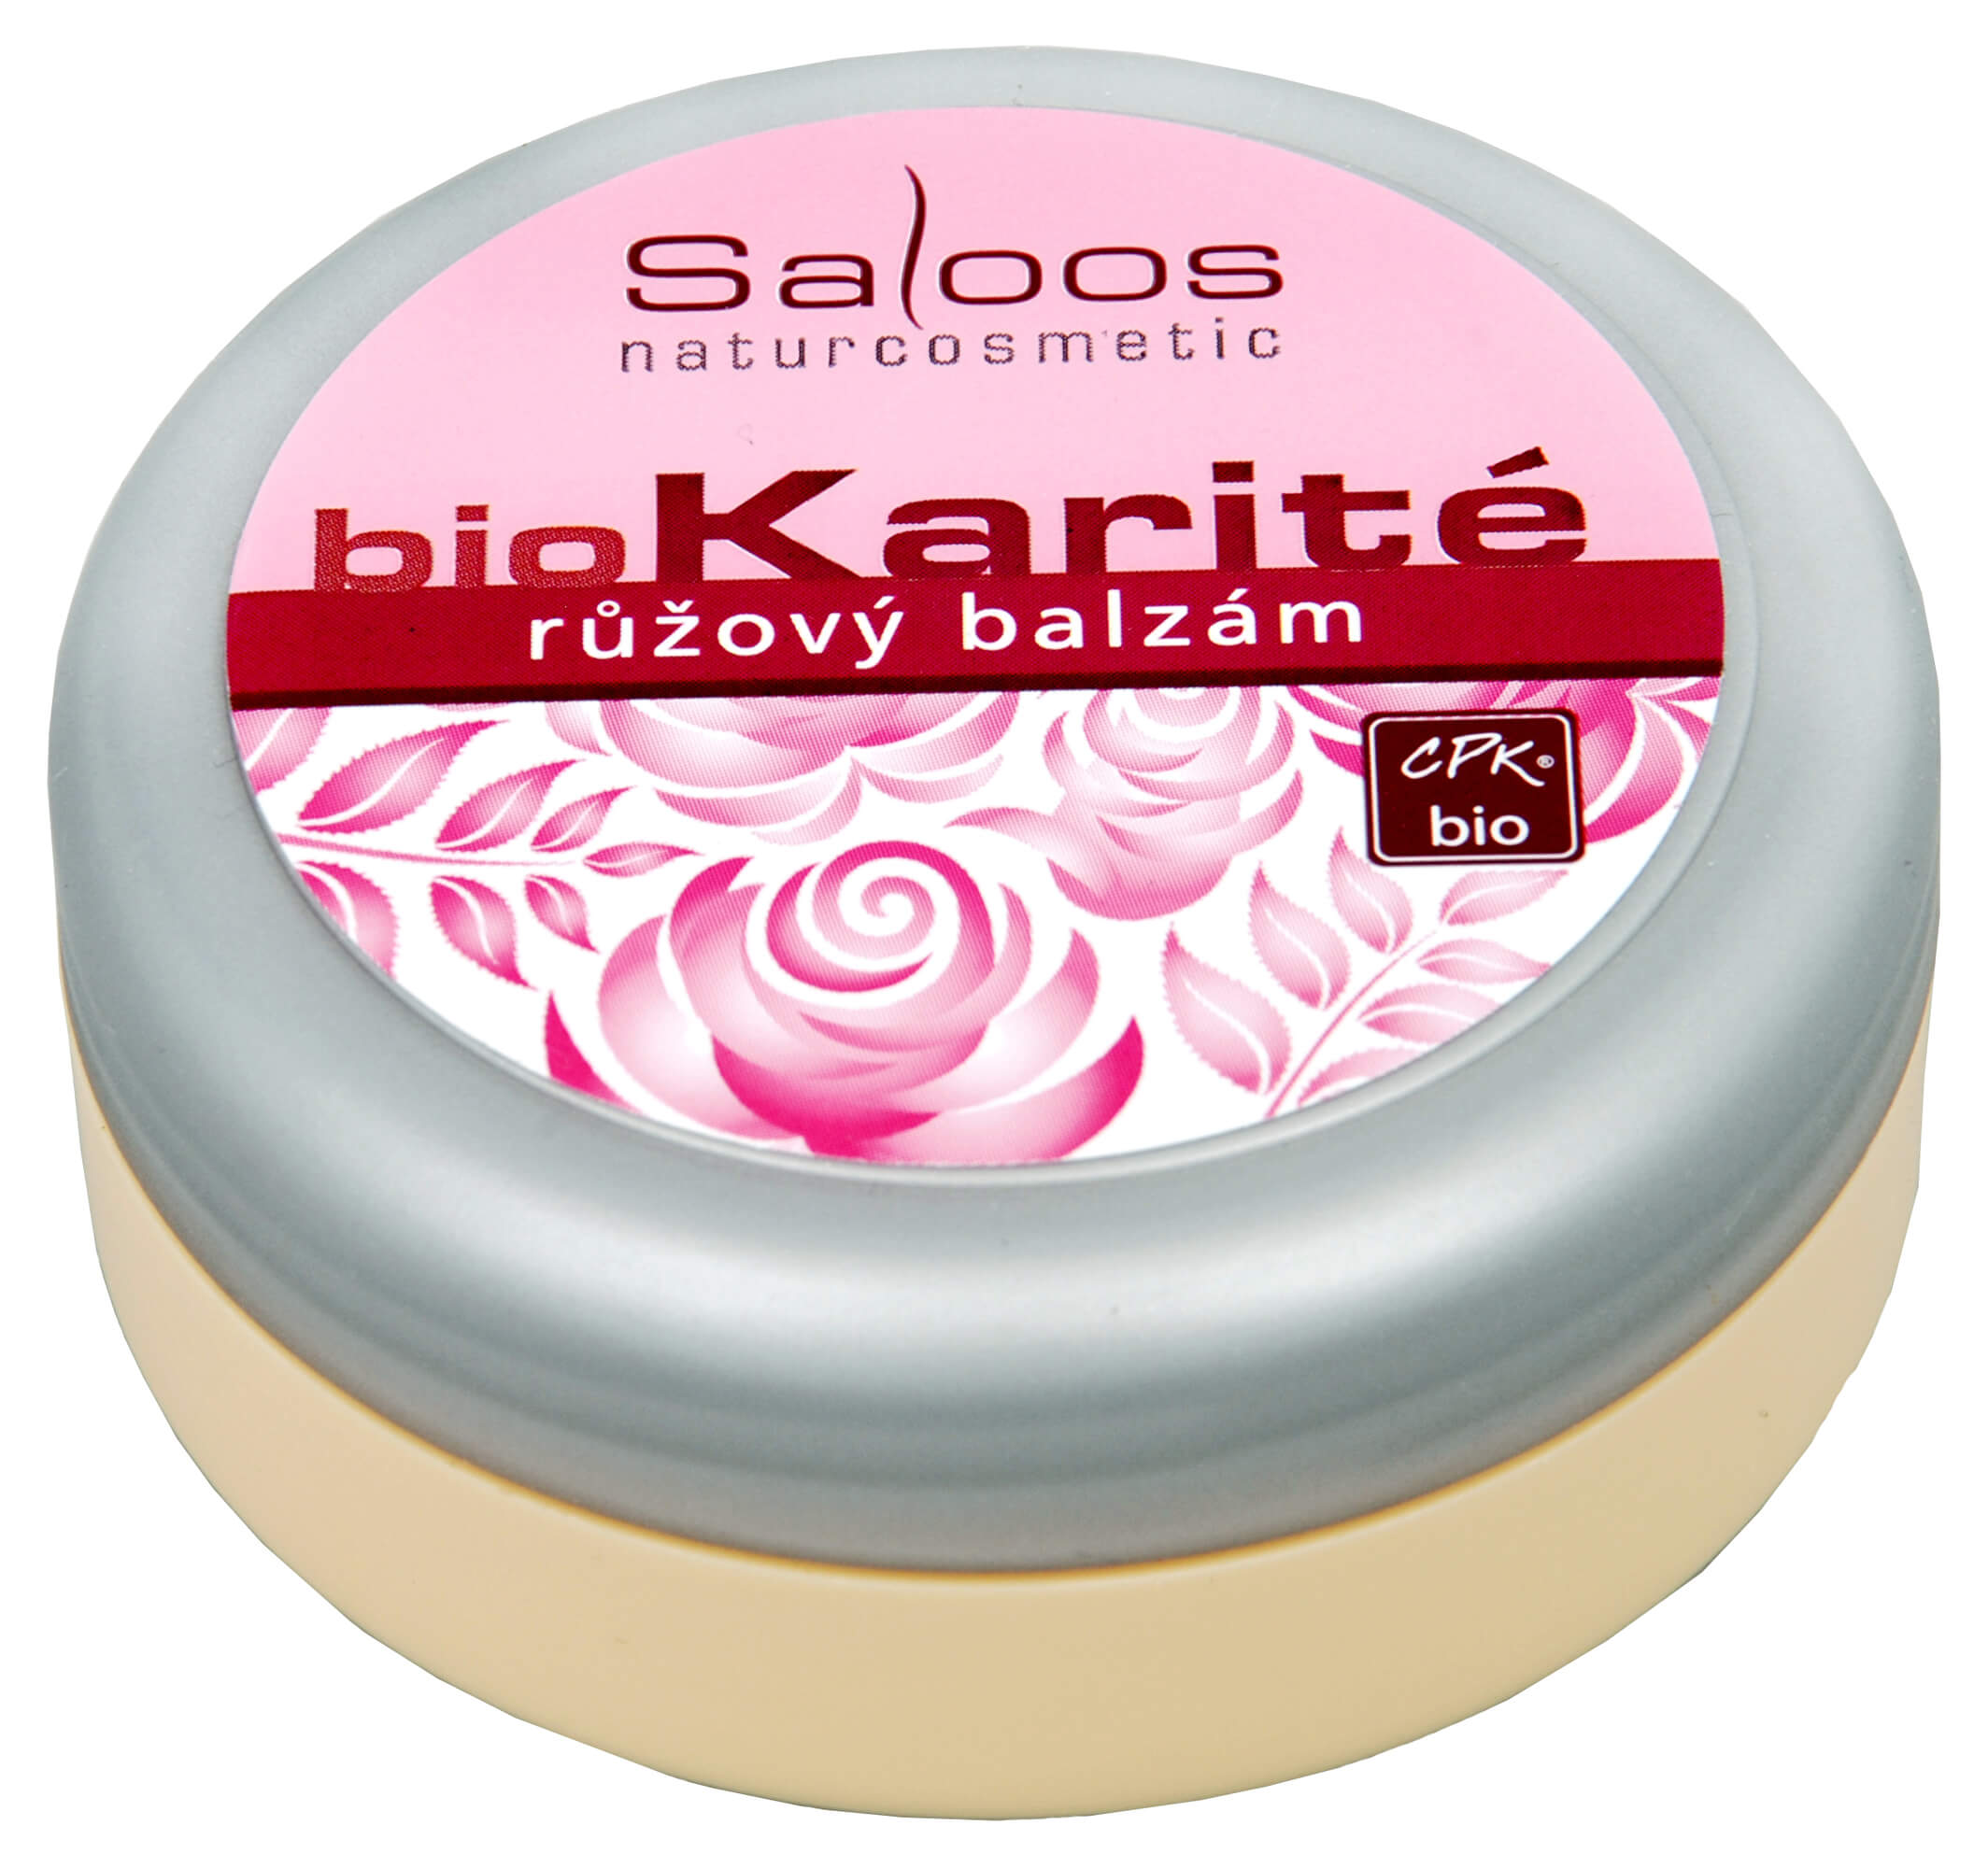 Zobrazit detail výrobku Saloos Bio Karité balzám - Růžový 50 ml + 2 měsíce na vrácení zboží